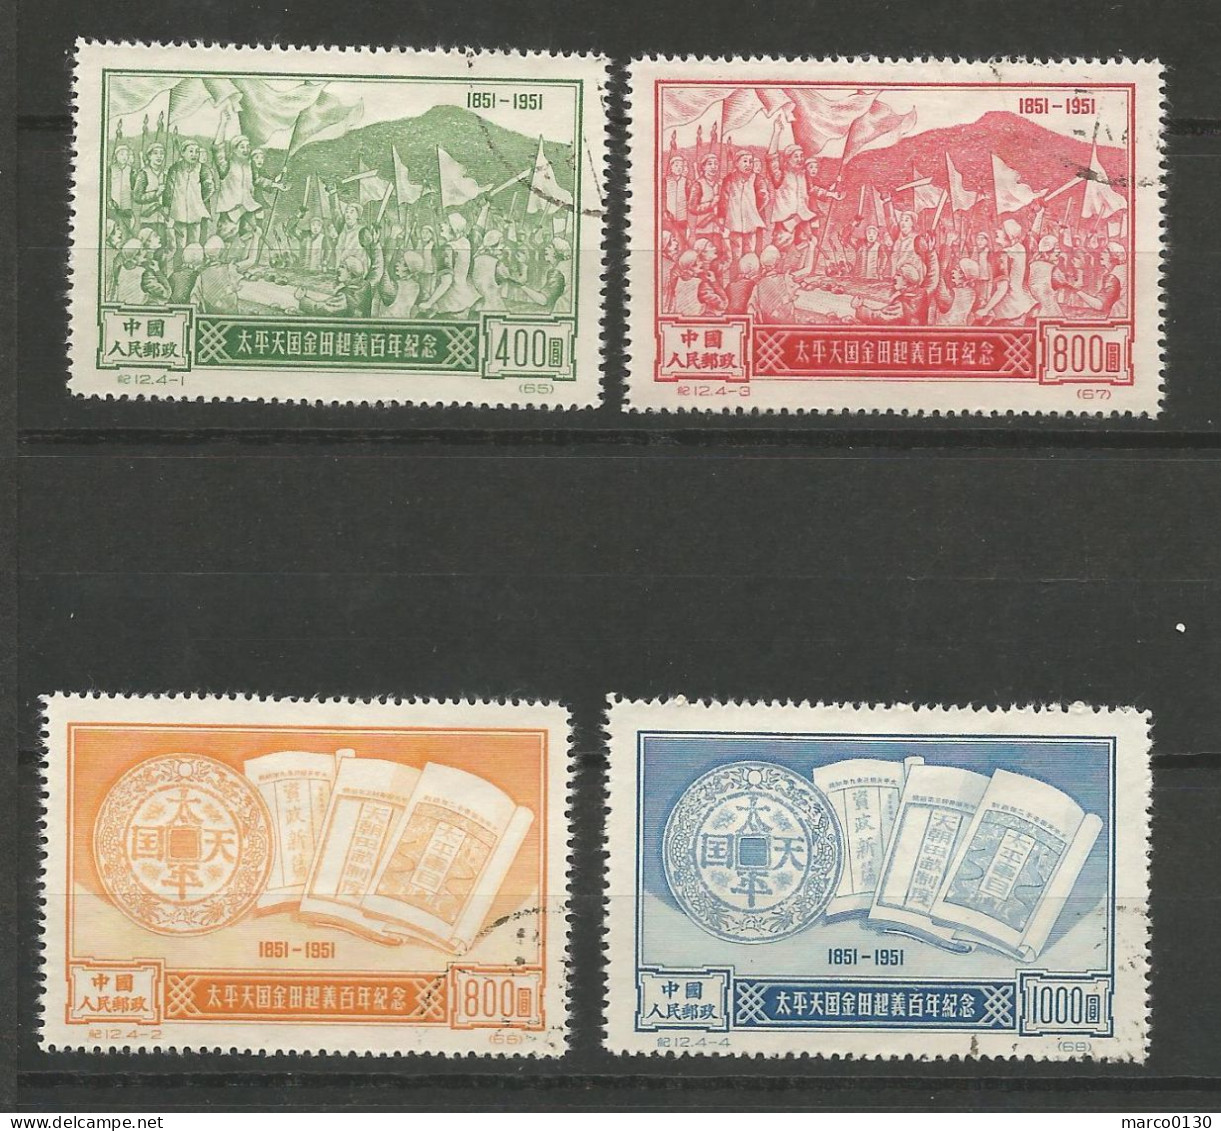 CHINE N° 920 + N° 921 + N° 922 + N° 923  OBLITERE - Used Stamps